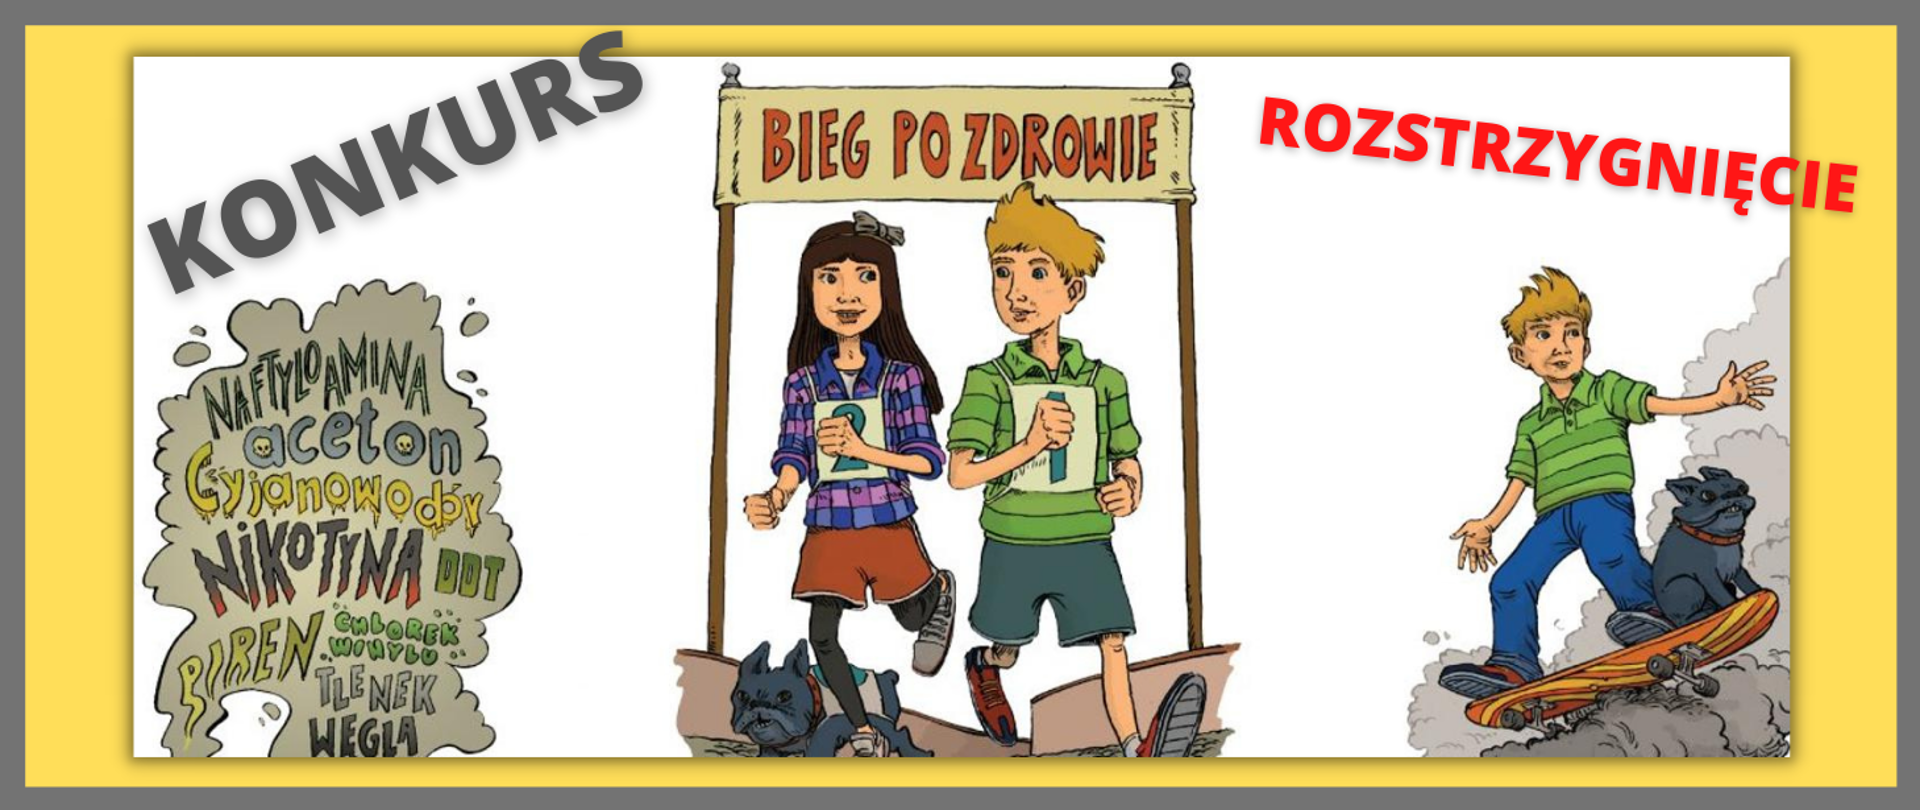 Grafika przedstawia ilustrację dziewczynkę oraz chłopca pod transparentem BIEG PO ZDROWIE, chłopca na deskorolce, imitację chmury dymu tytoniowego.
